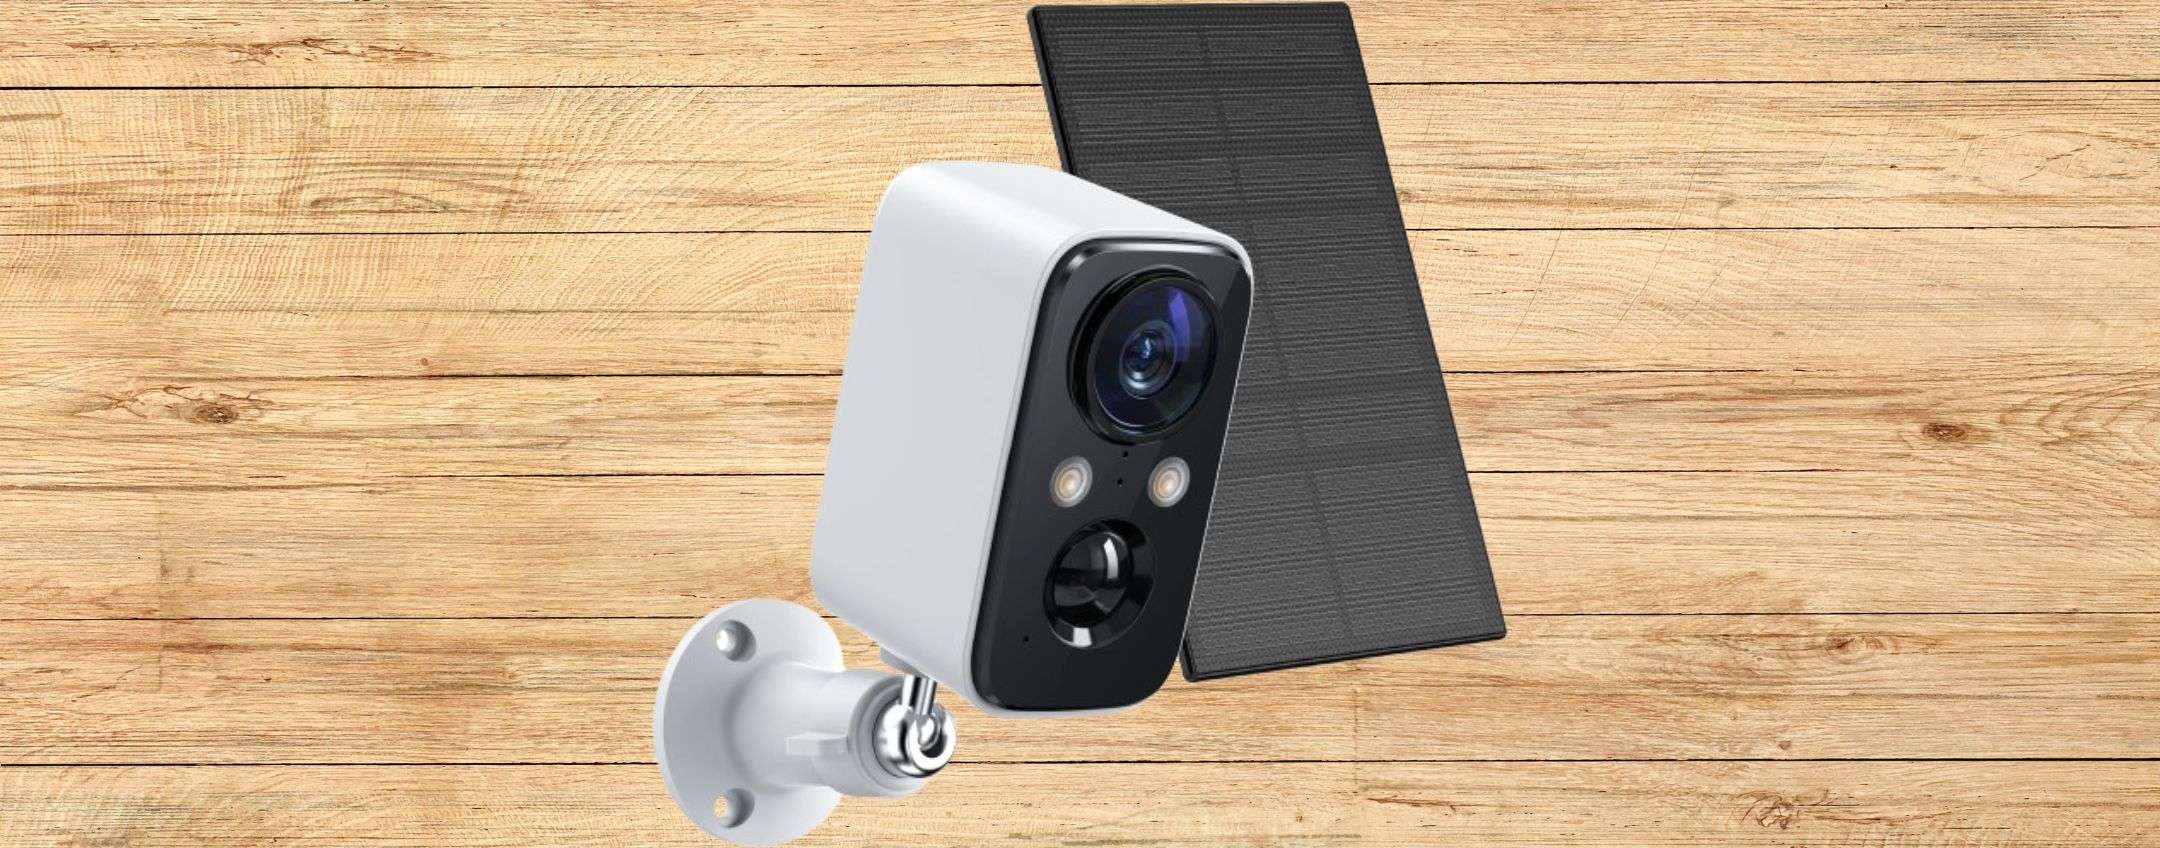 Videocamera di sicurezza WIRELESS a 29,99€: pannello solare GRATIS